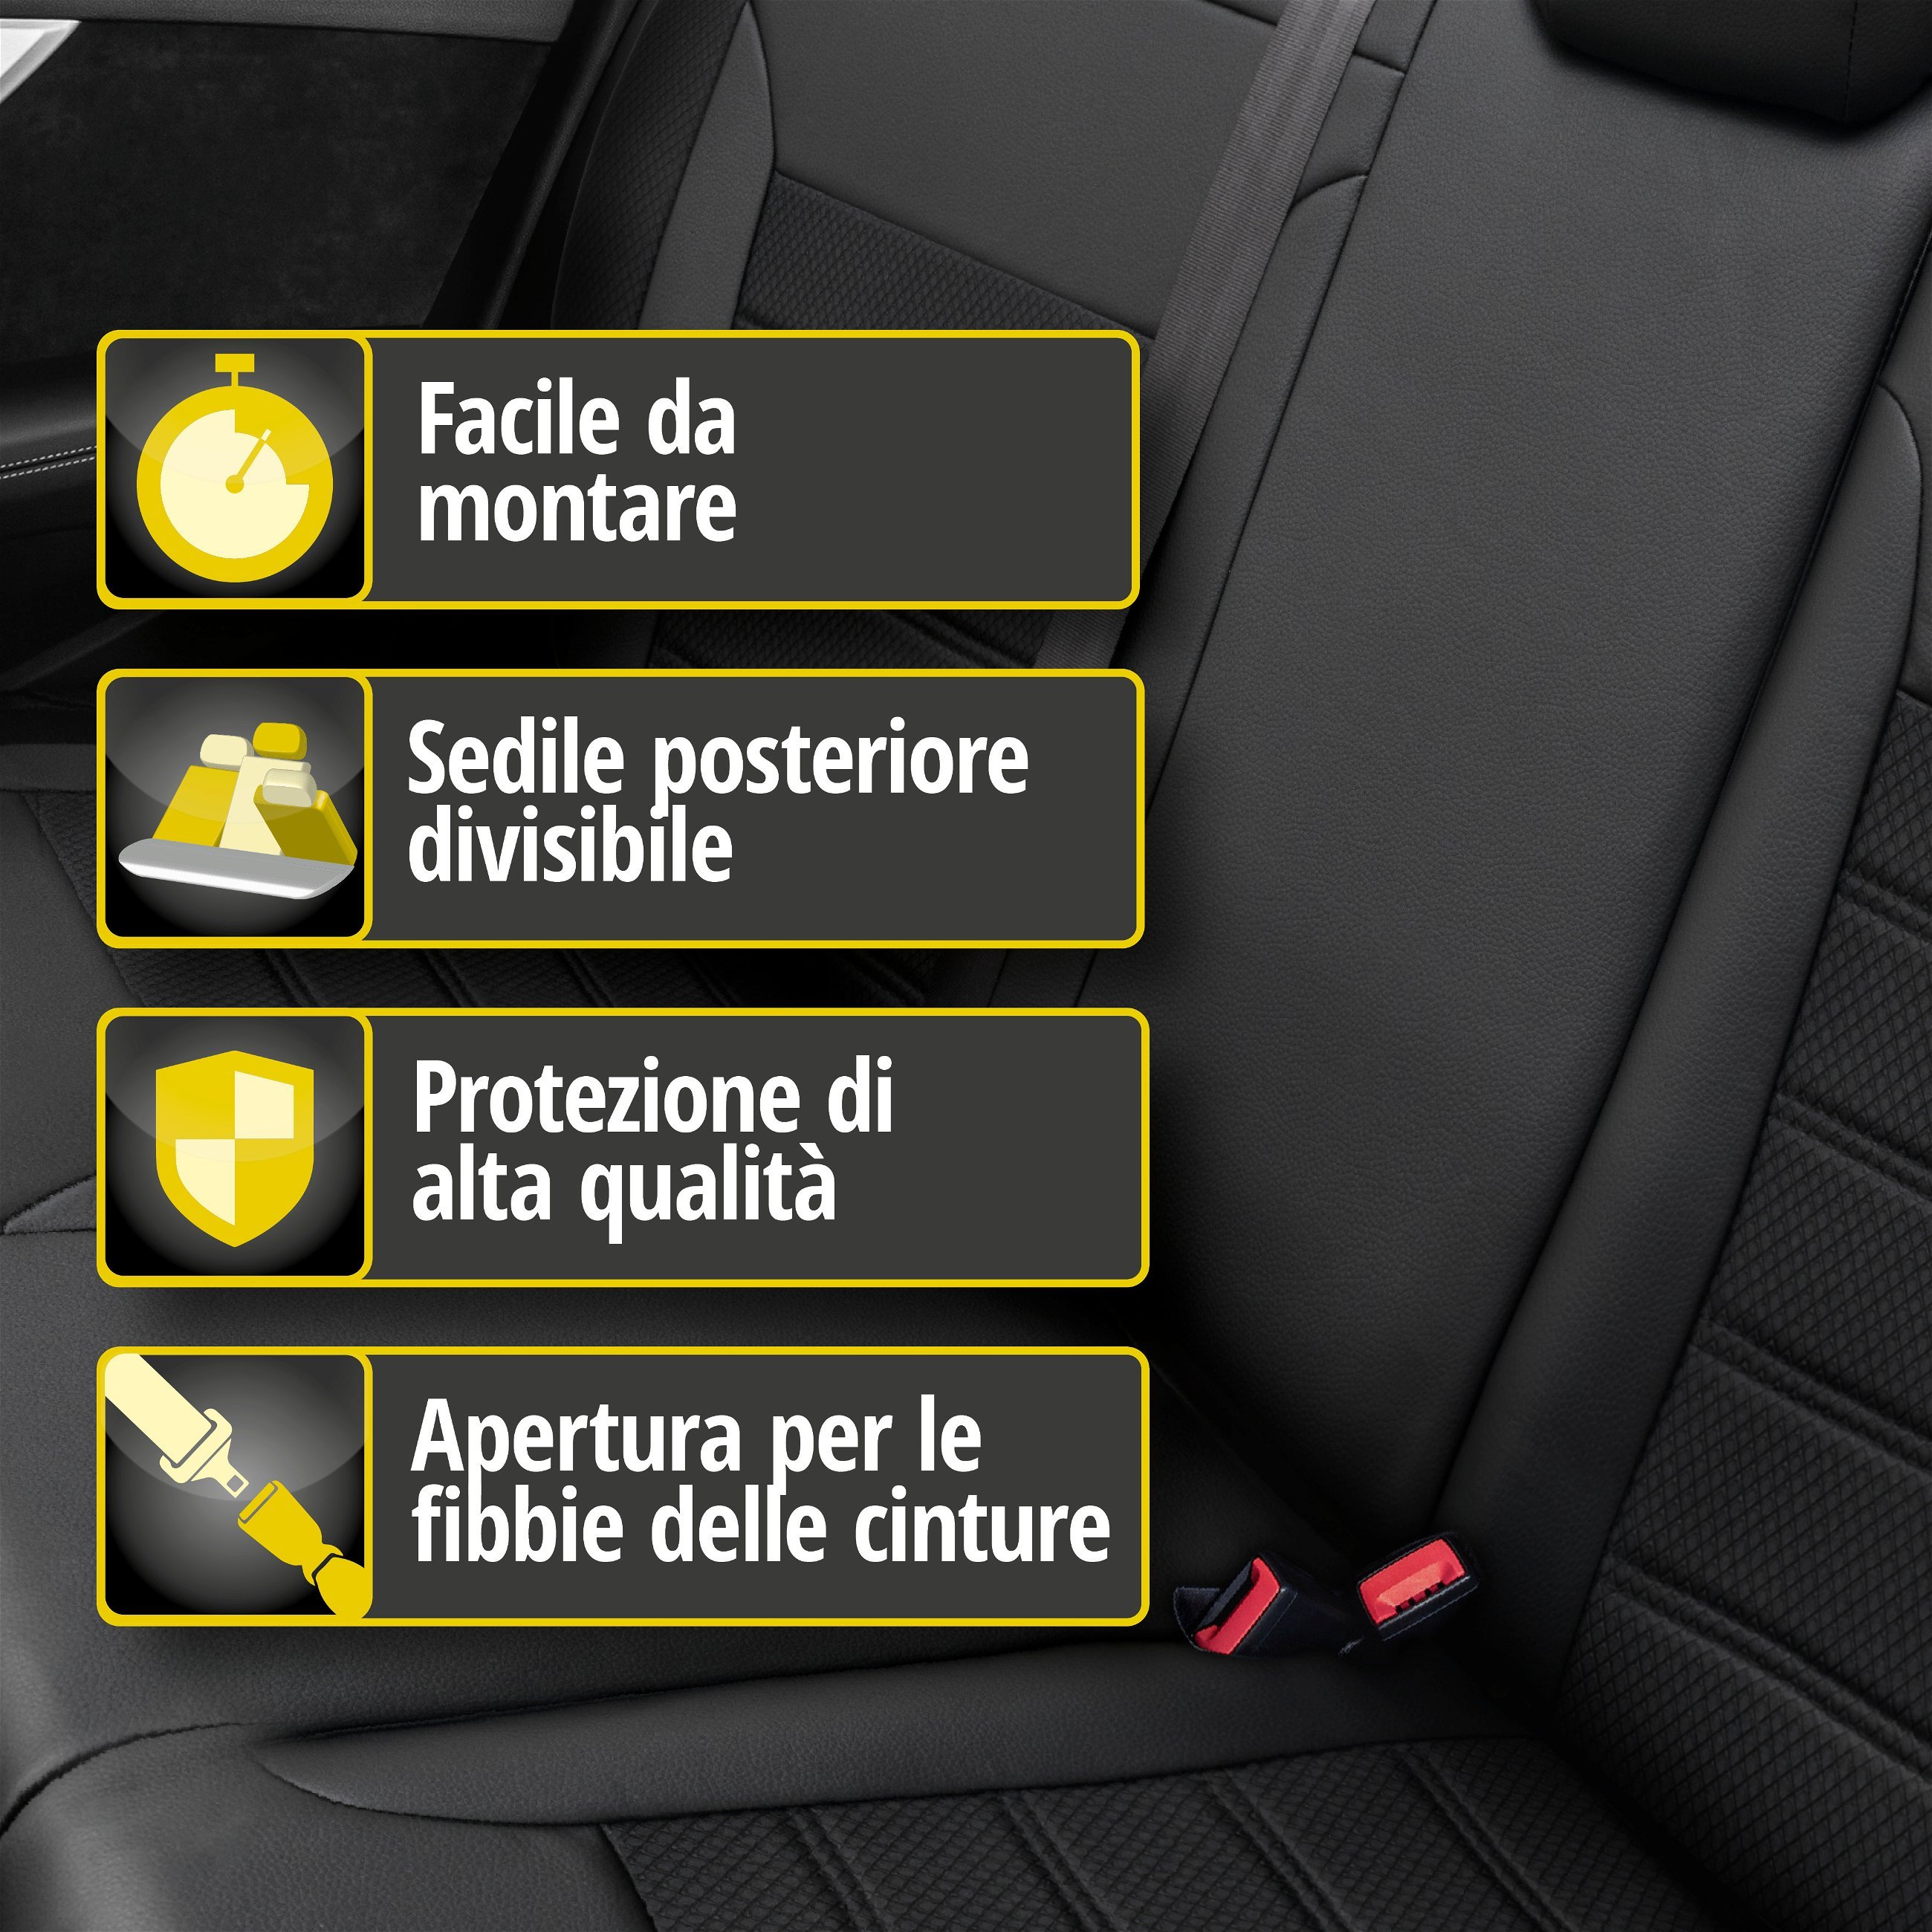 Coprisedili Aversa per VW Golf VII Comfortline 08/2013-03/2021, 1 coprisedili posteriore per sedili normali